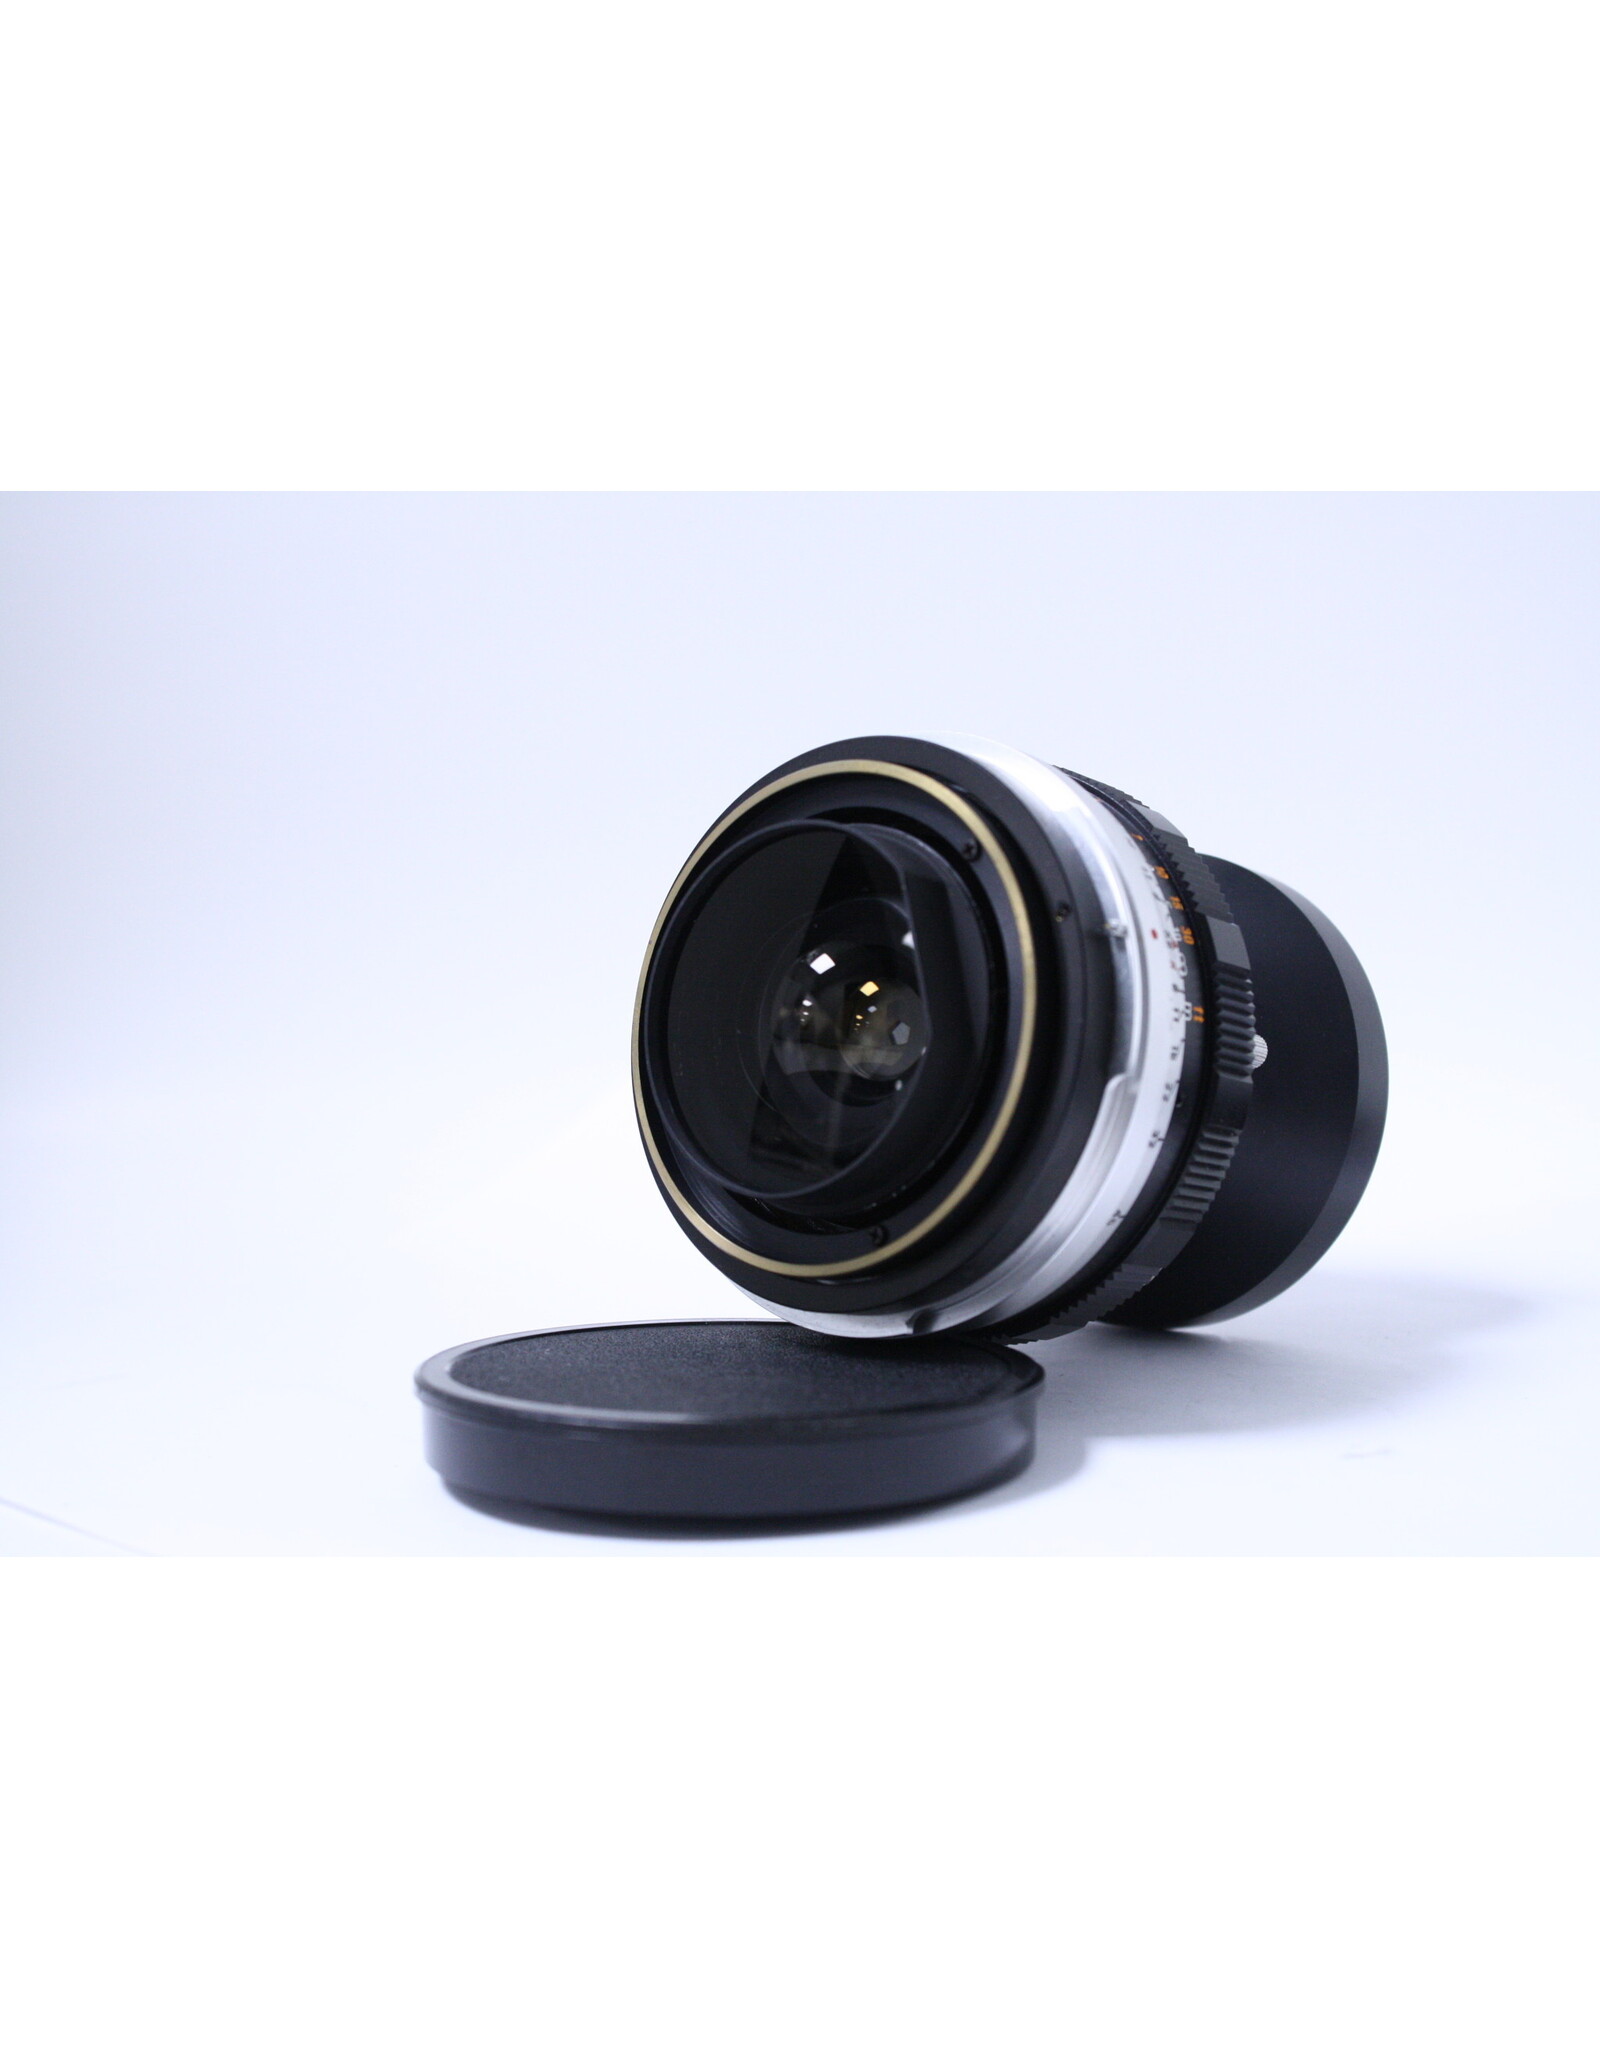 Mamiya-Sekor Mamiya Sekor 75mm f/5.6 Lens for Mamiya Press 23 Camera with Rangefinder and hood and hard case(Pre-Owned)